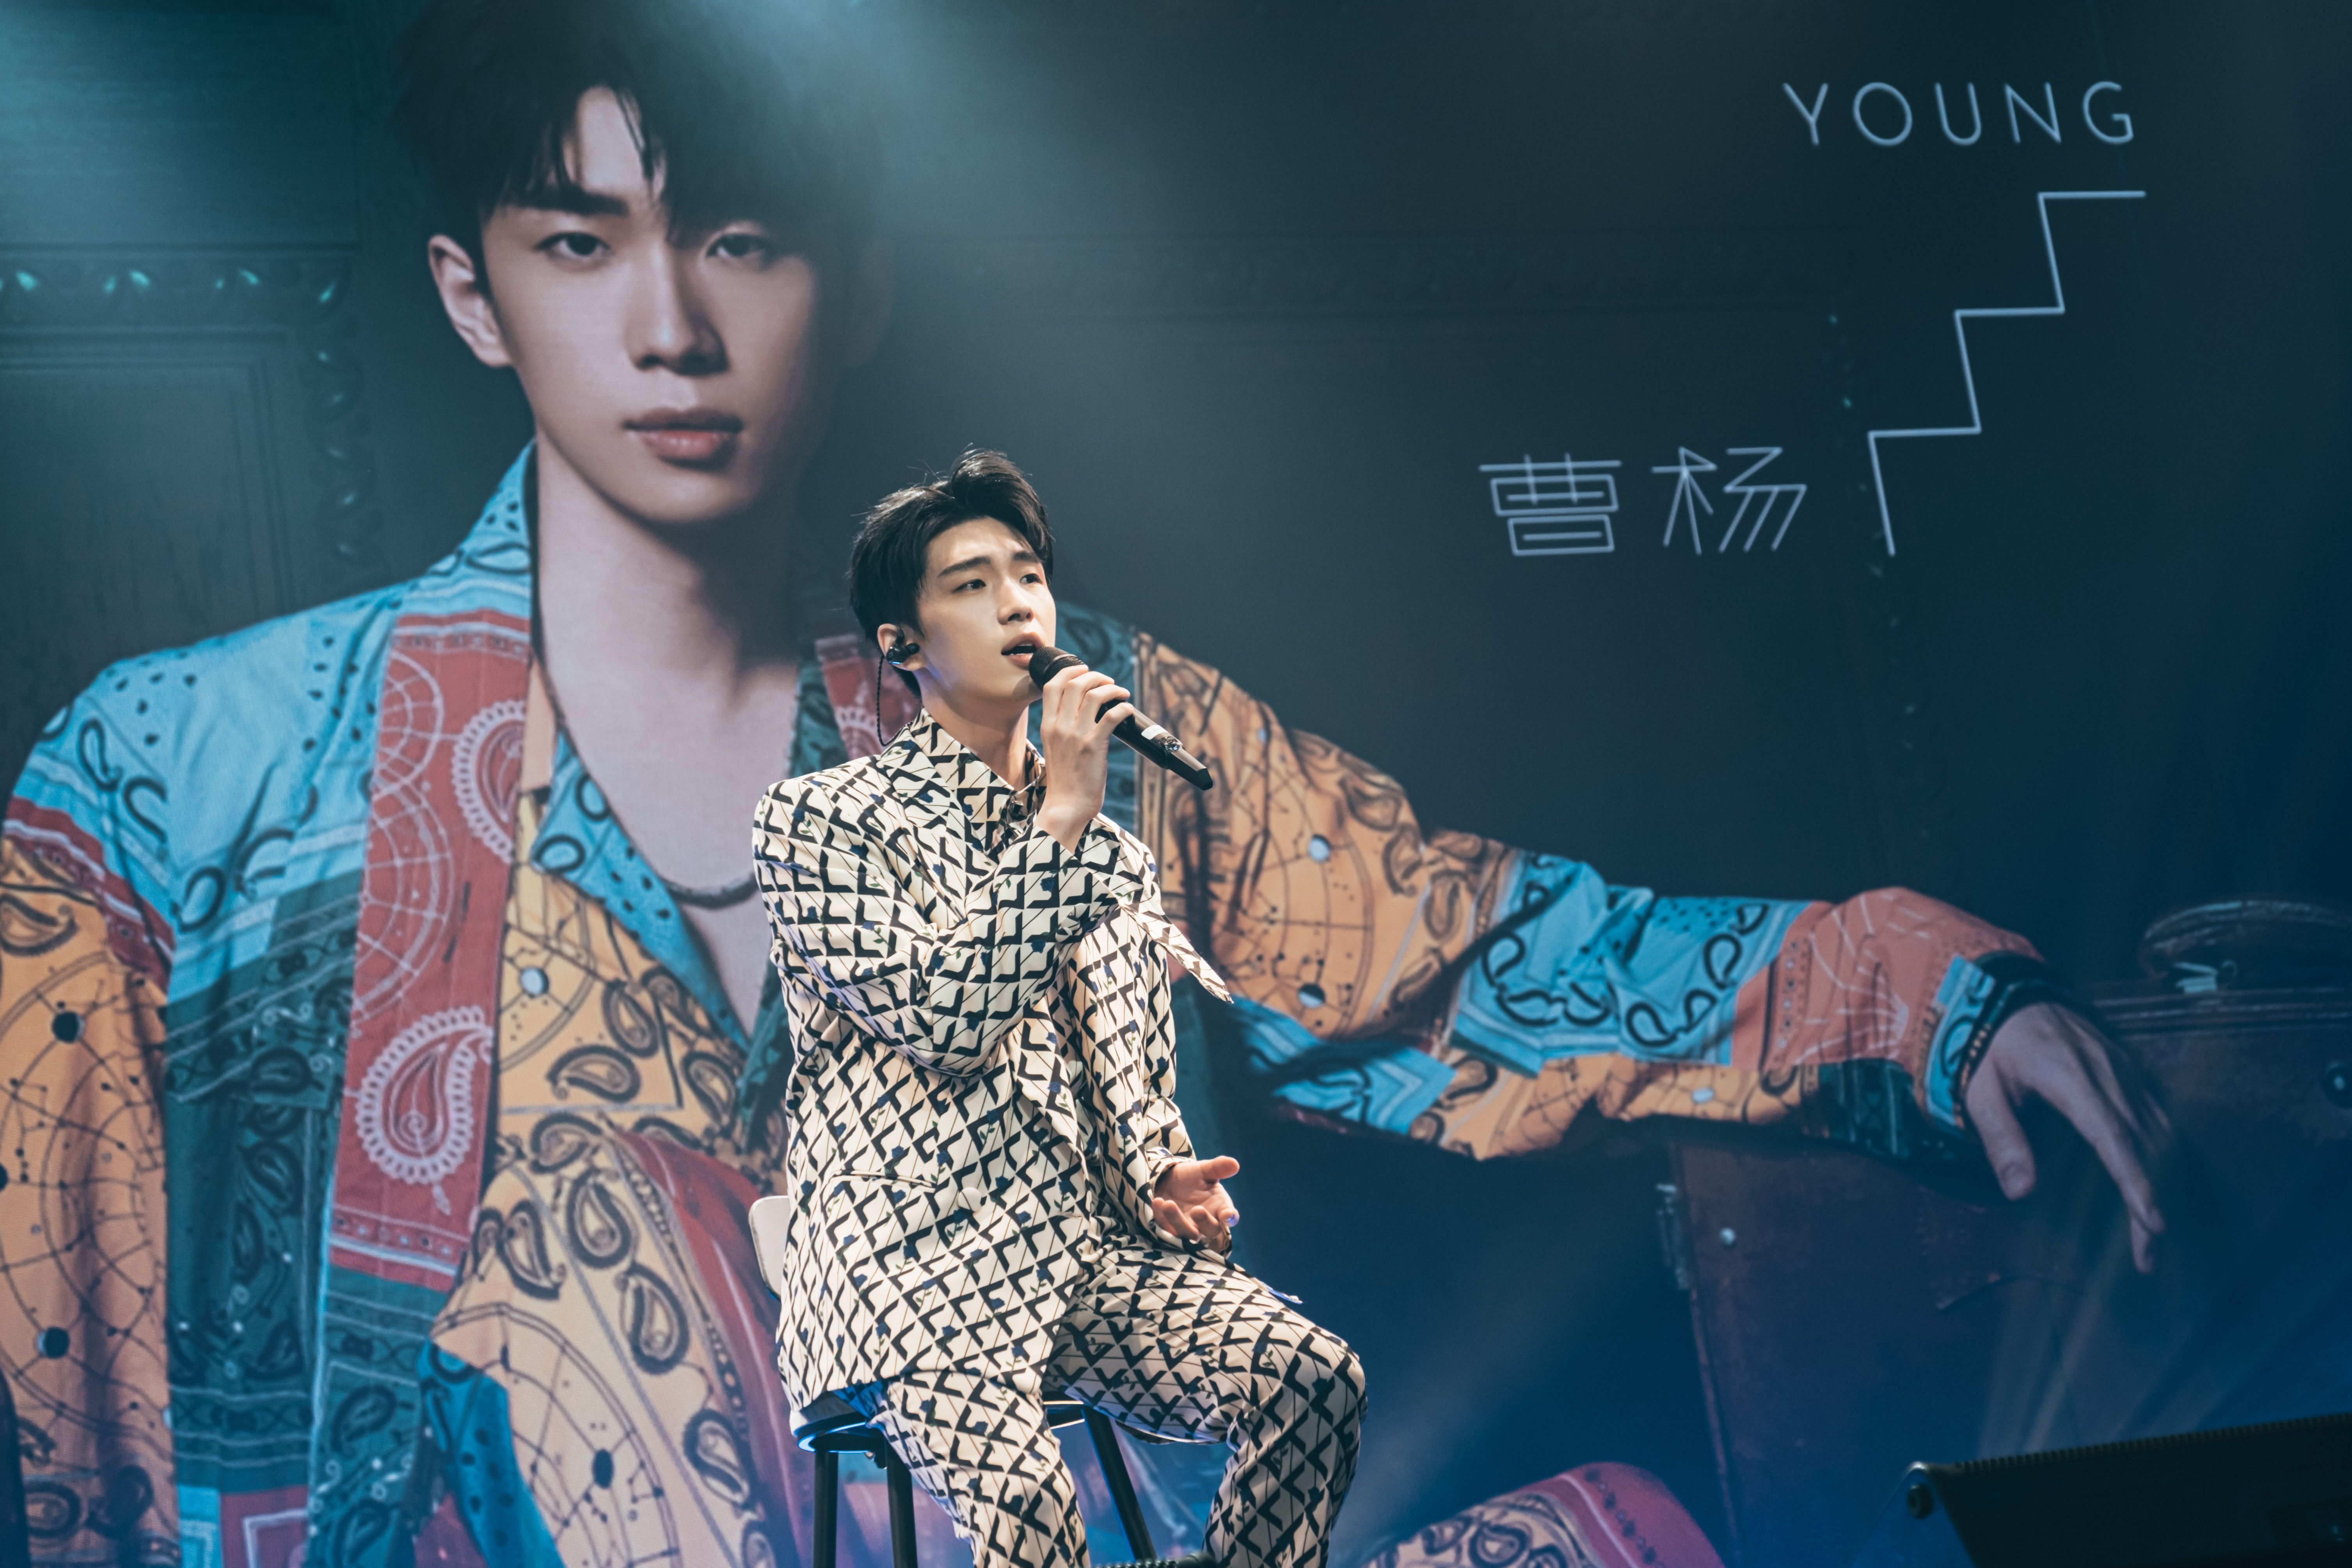 杰威尔音乐旗下歌手曹杨新专辑《极光》发布会在北京举行